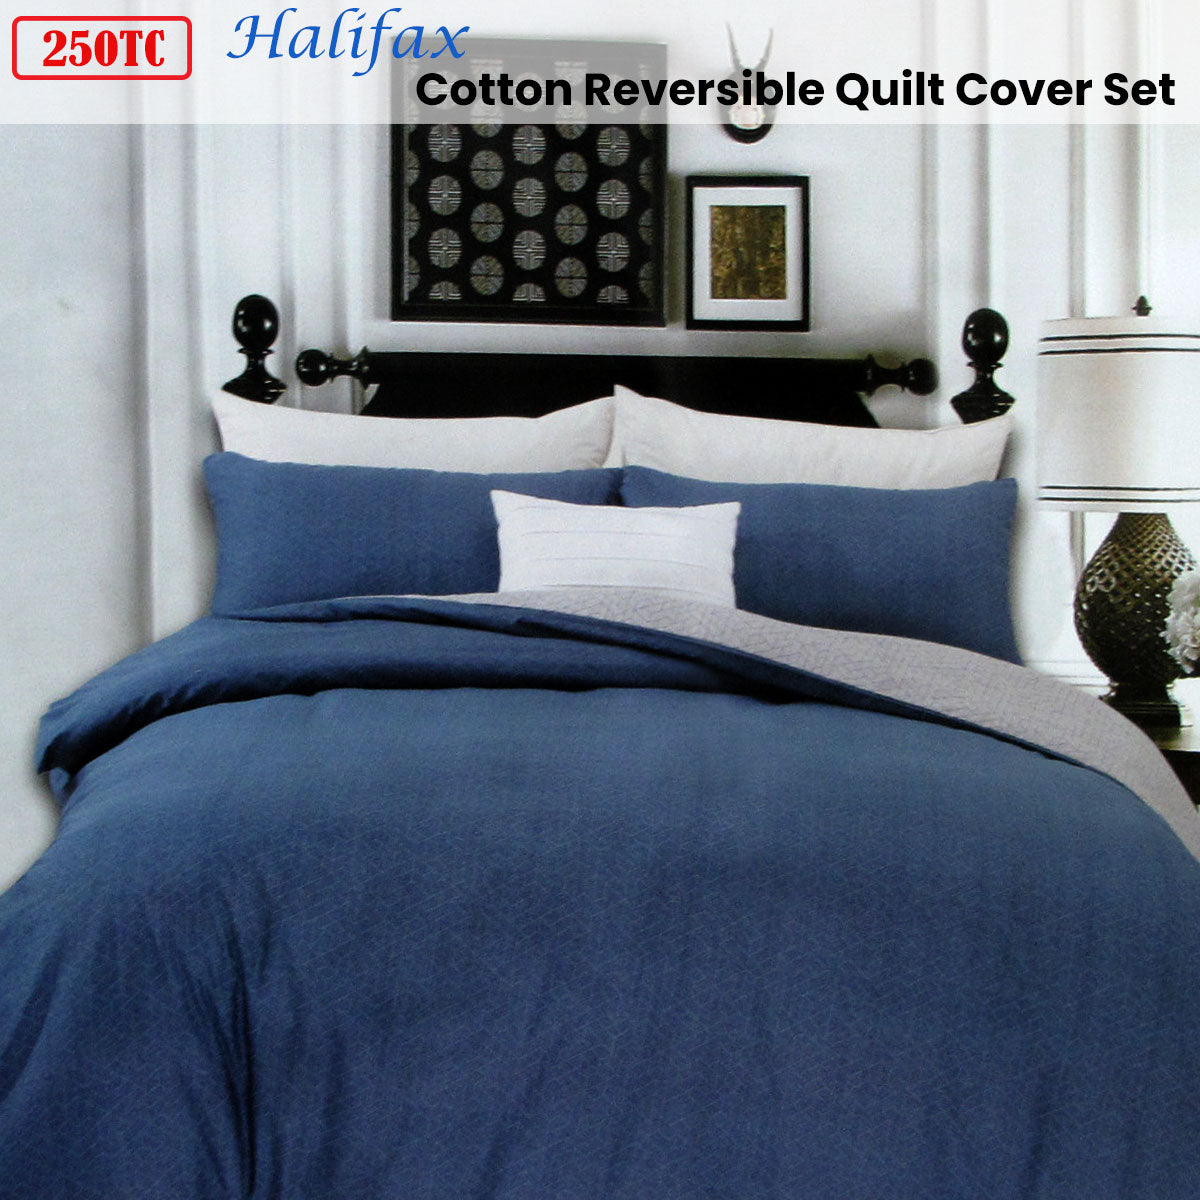 Queen 250TC Halifax Cotton Reversible Quilt Cover Set